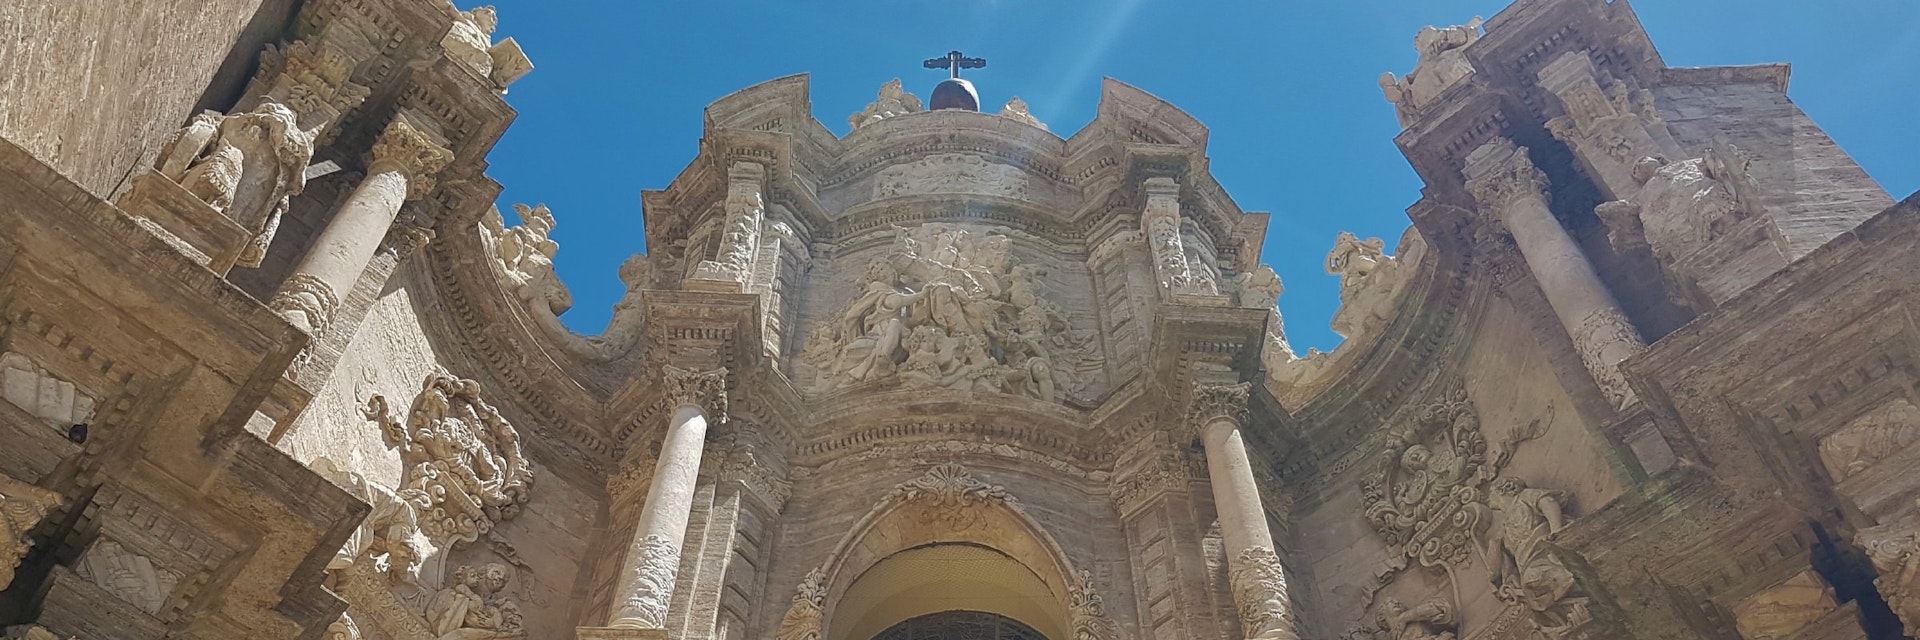 Catedral de Valencia entrance.